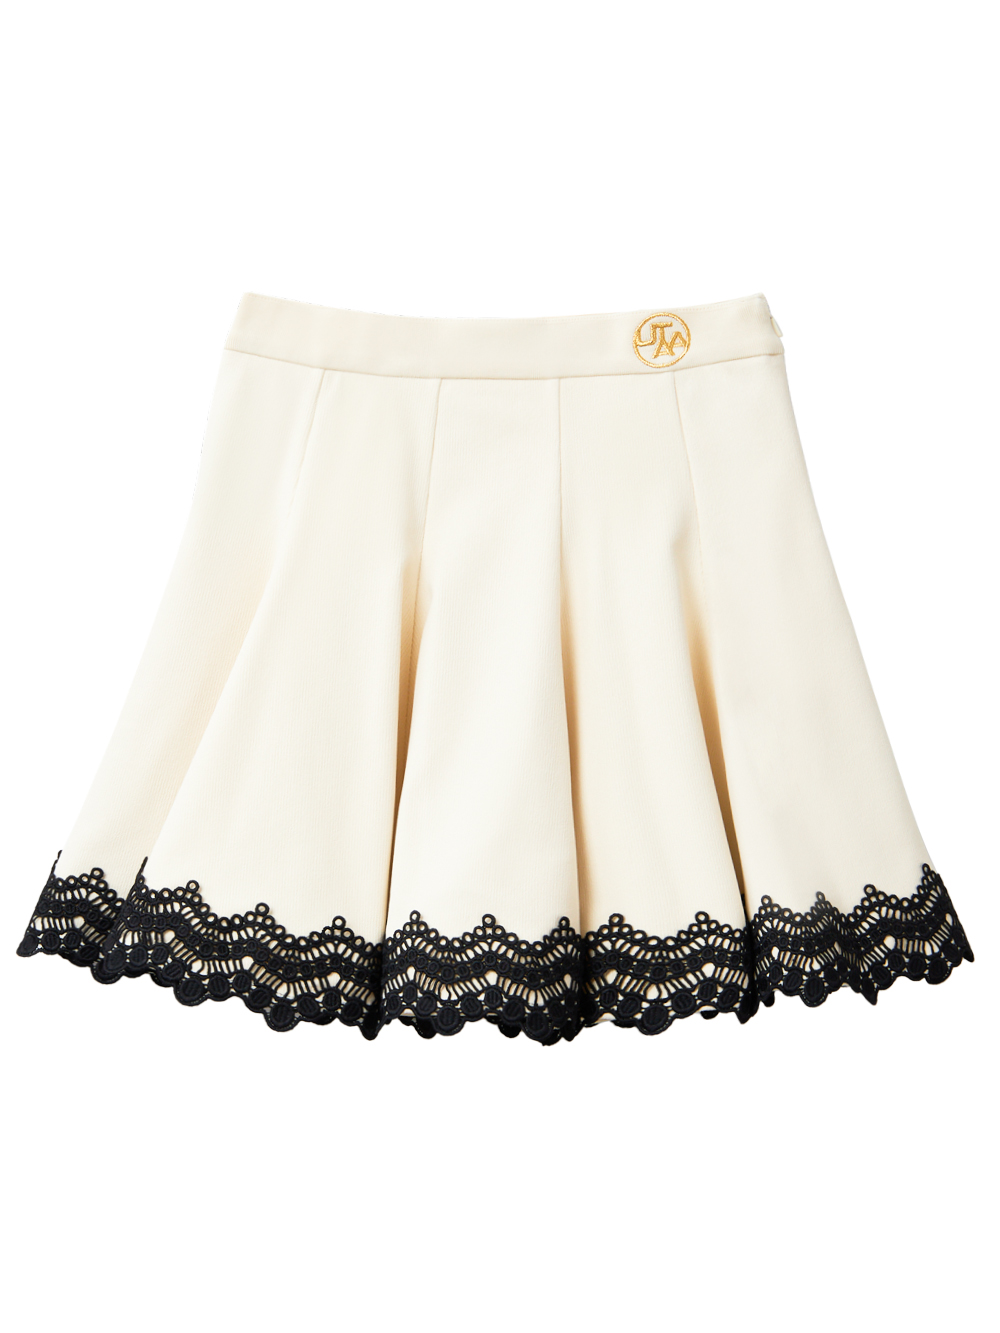 UTAA Punching Lace Flare Skirt  : Ivory (UC4SSF210IV)